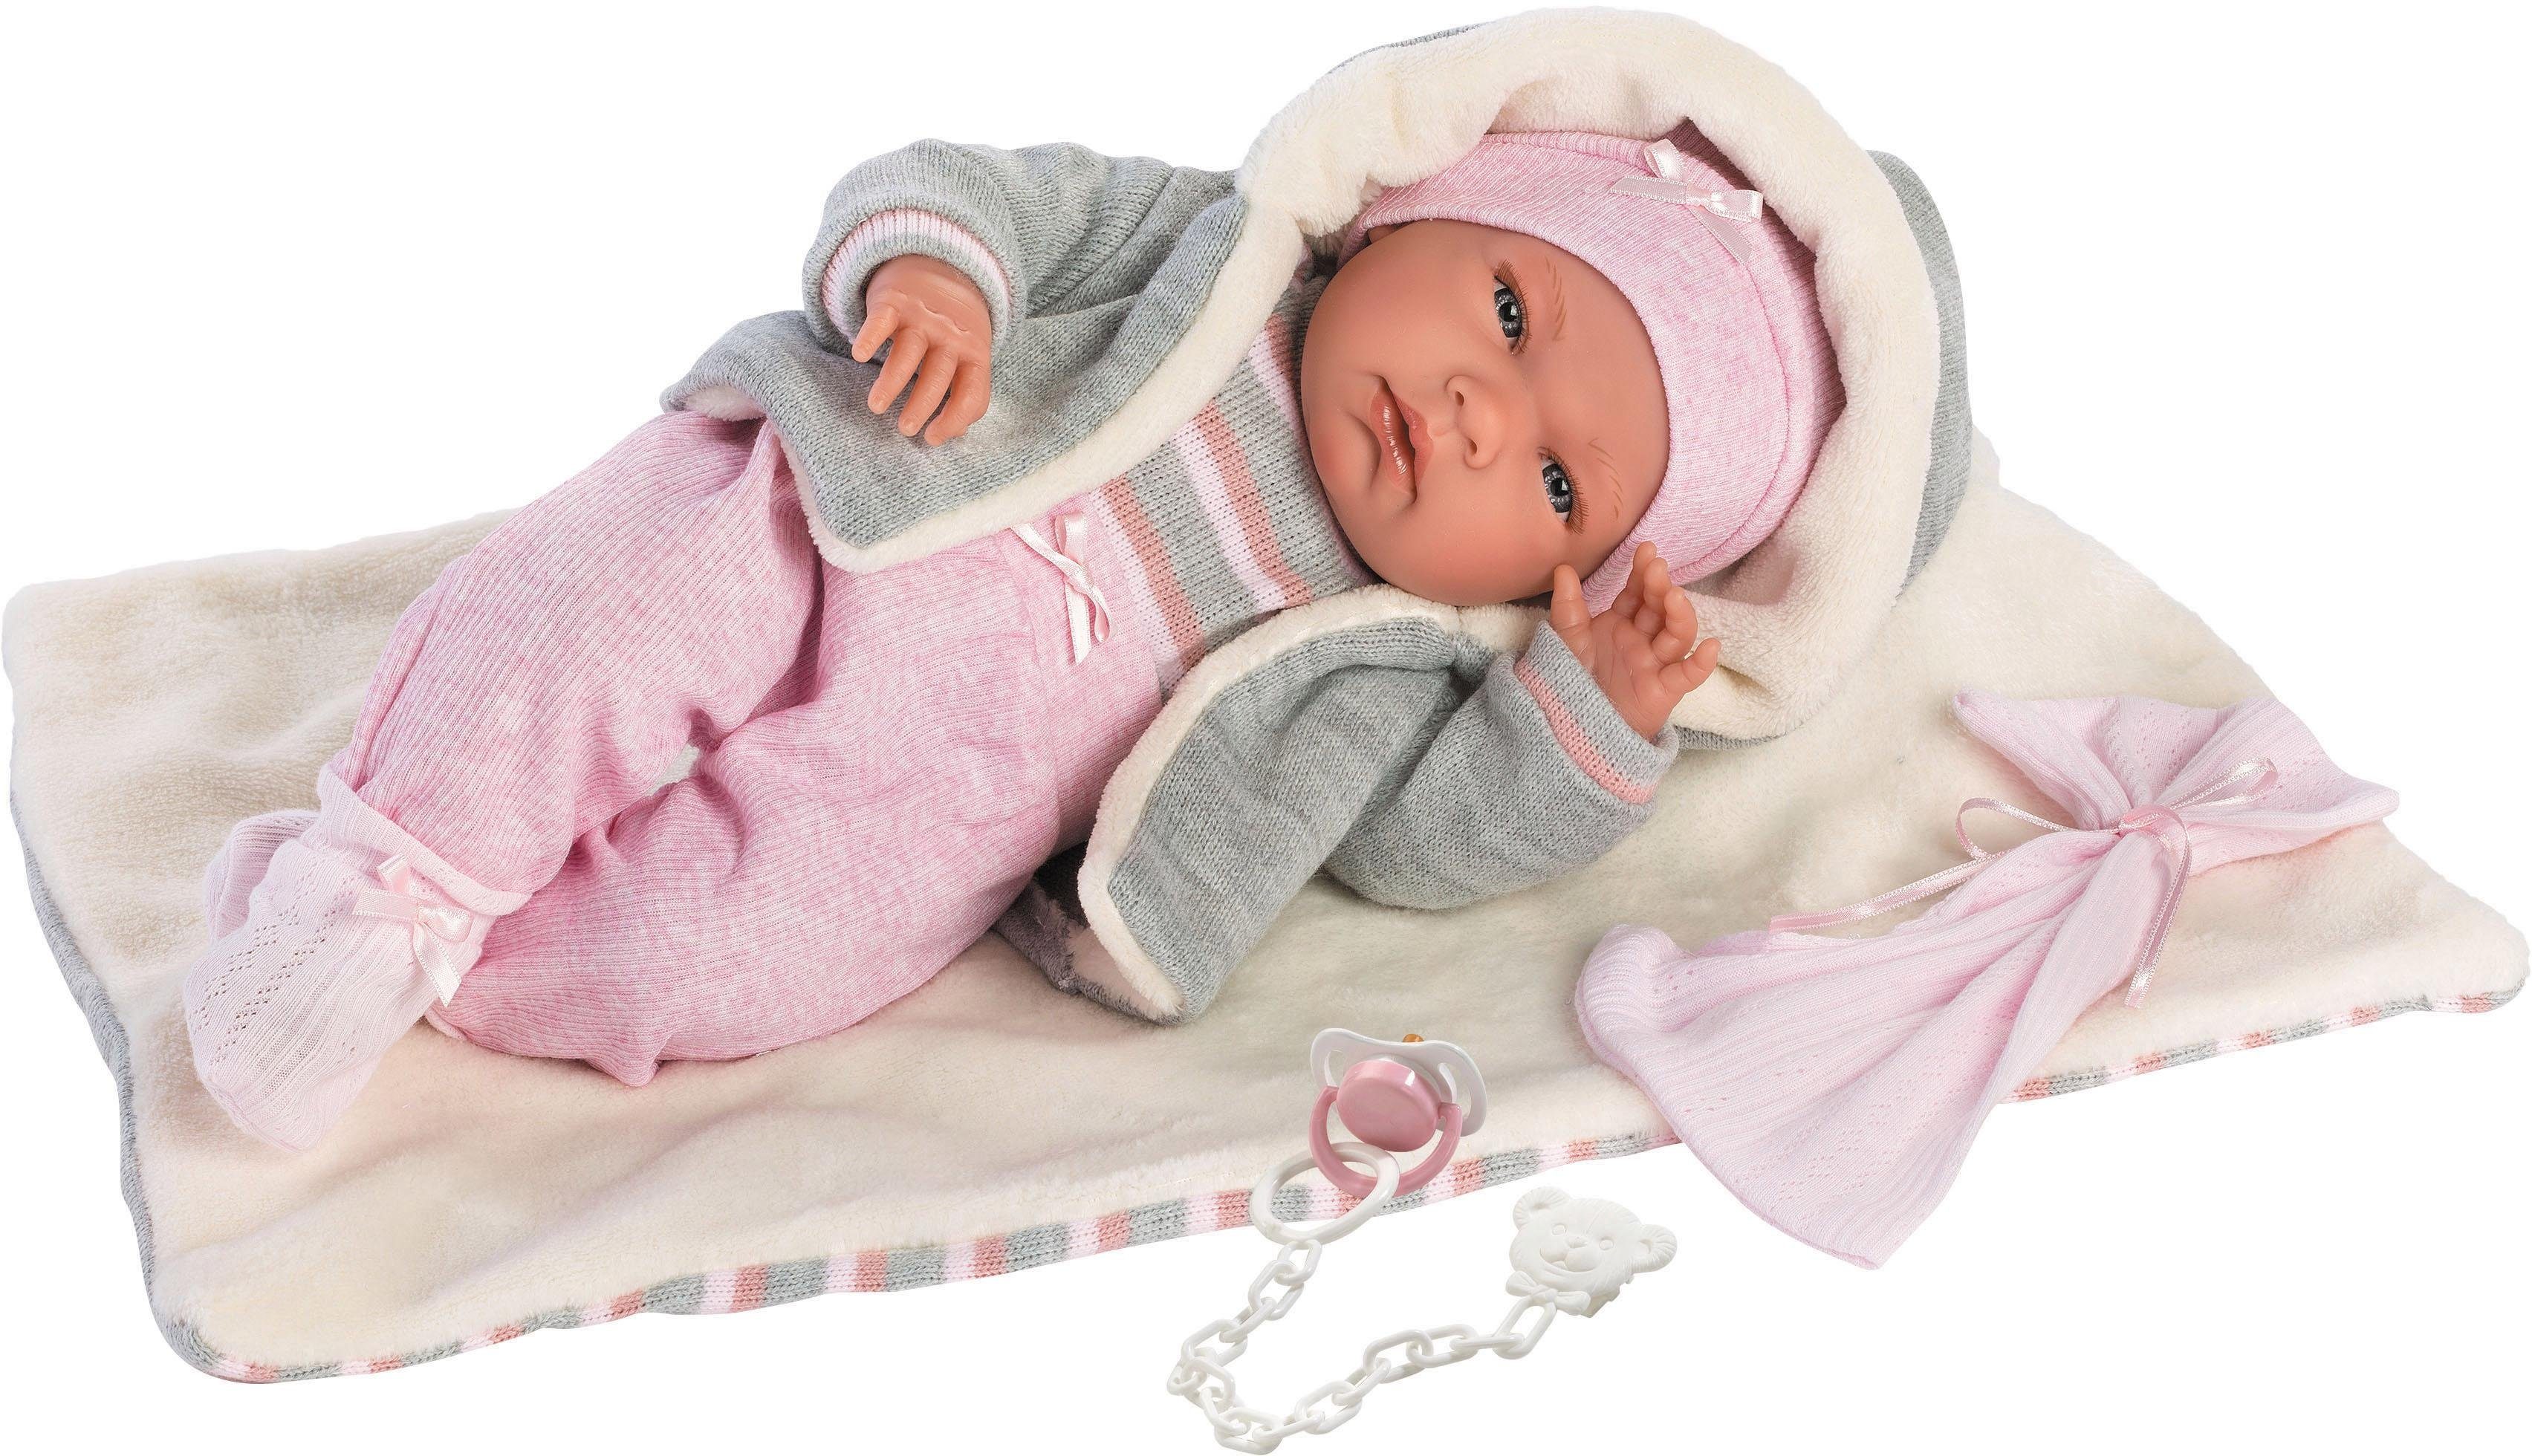 Puppen für Kinder online kaufen » Kinderpuppen | OTTO